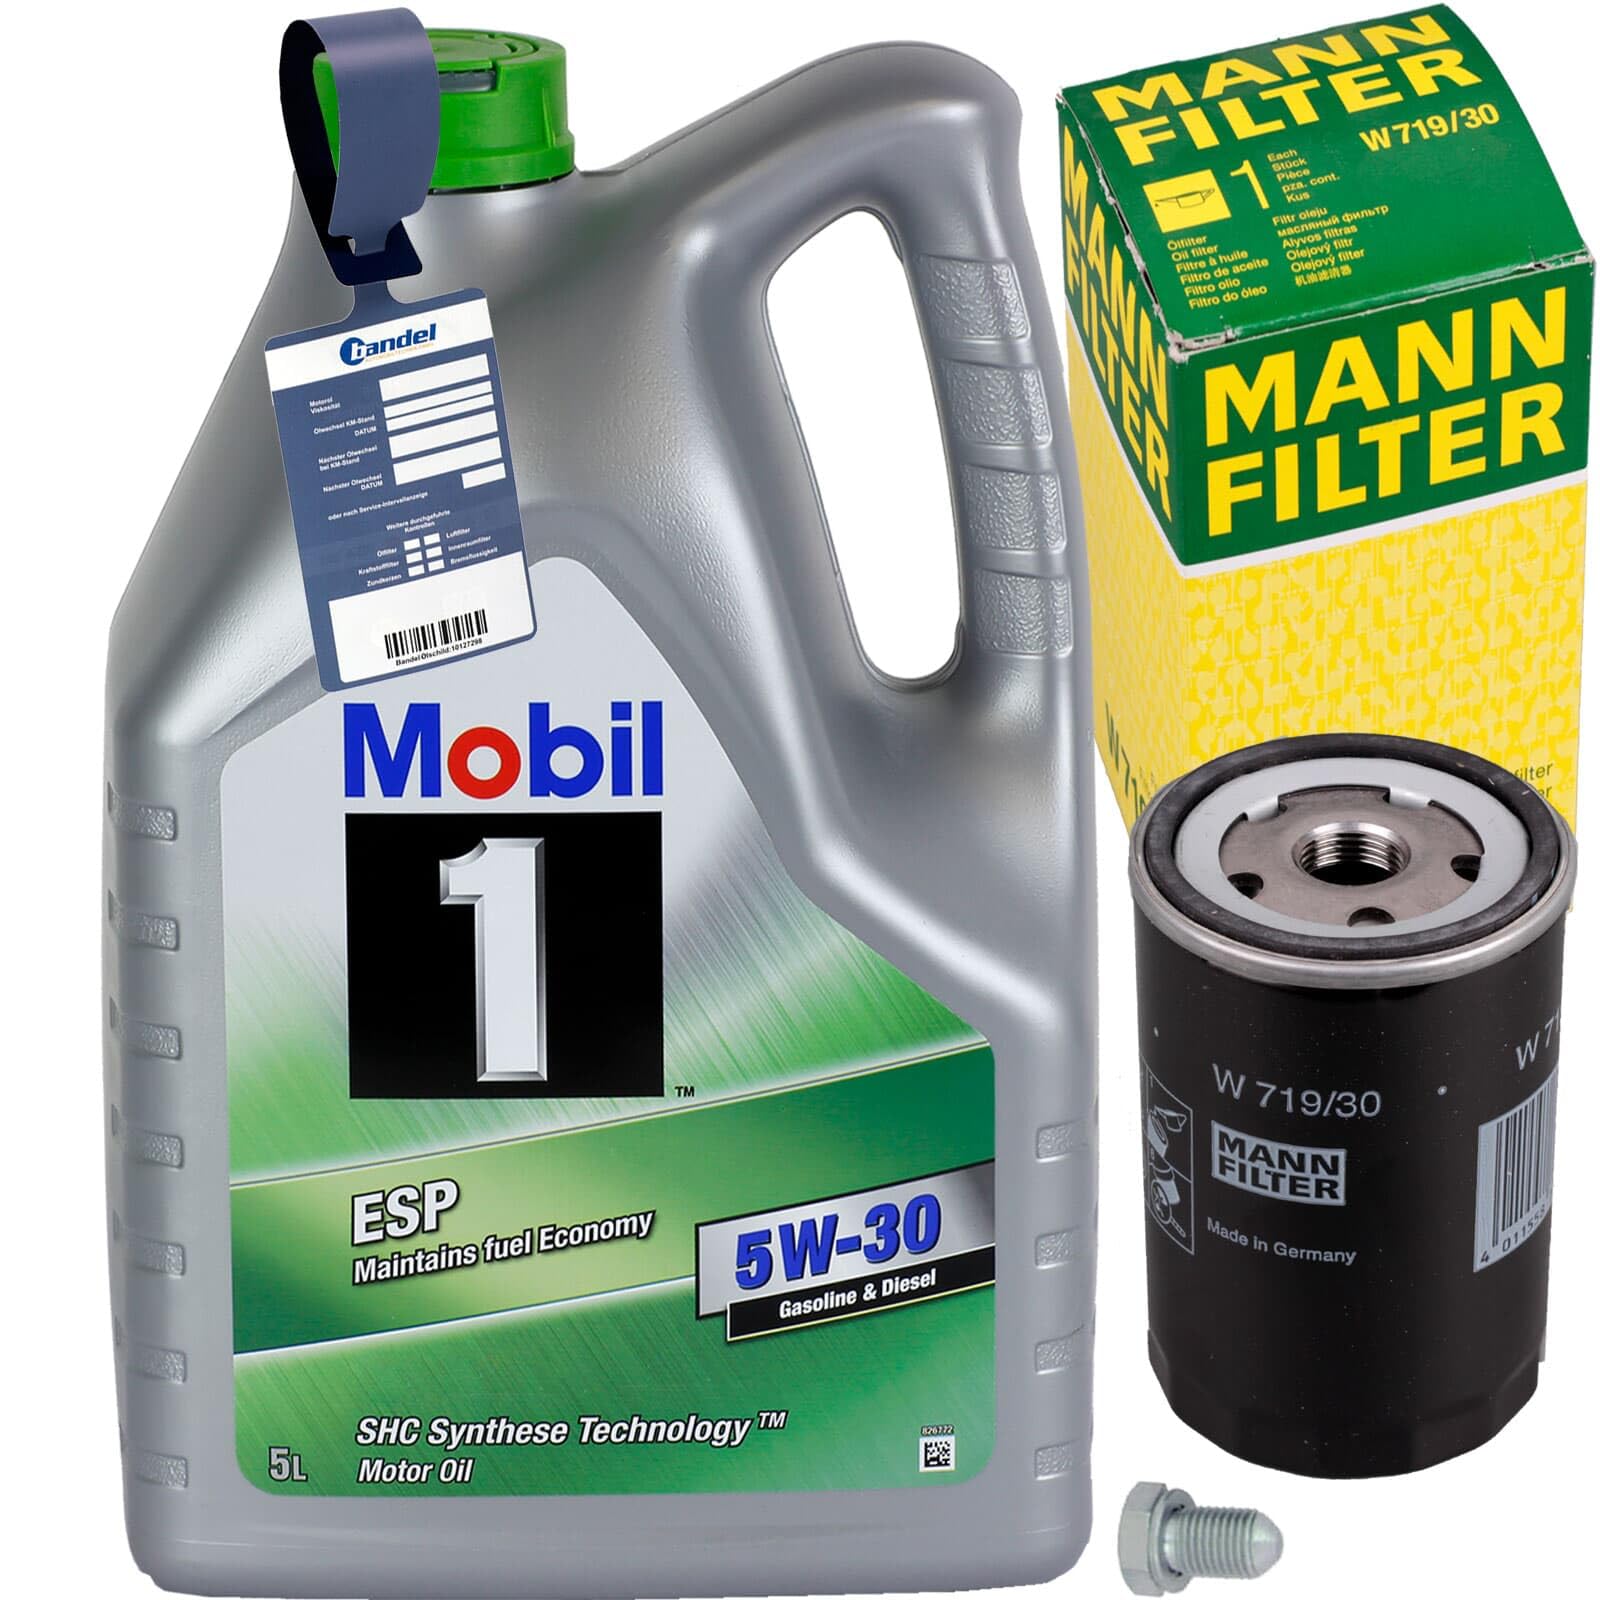 Mann Ölfilter + MOBIL 5W30 Öl passend für T5 Golf 4 5 6 A3 A4 von BandelOne